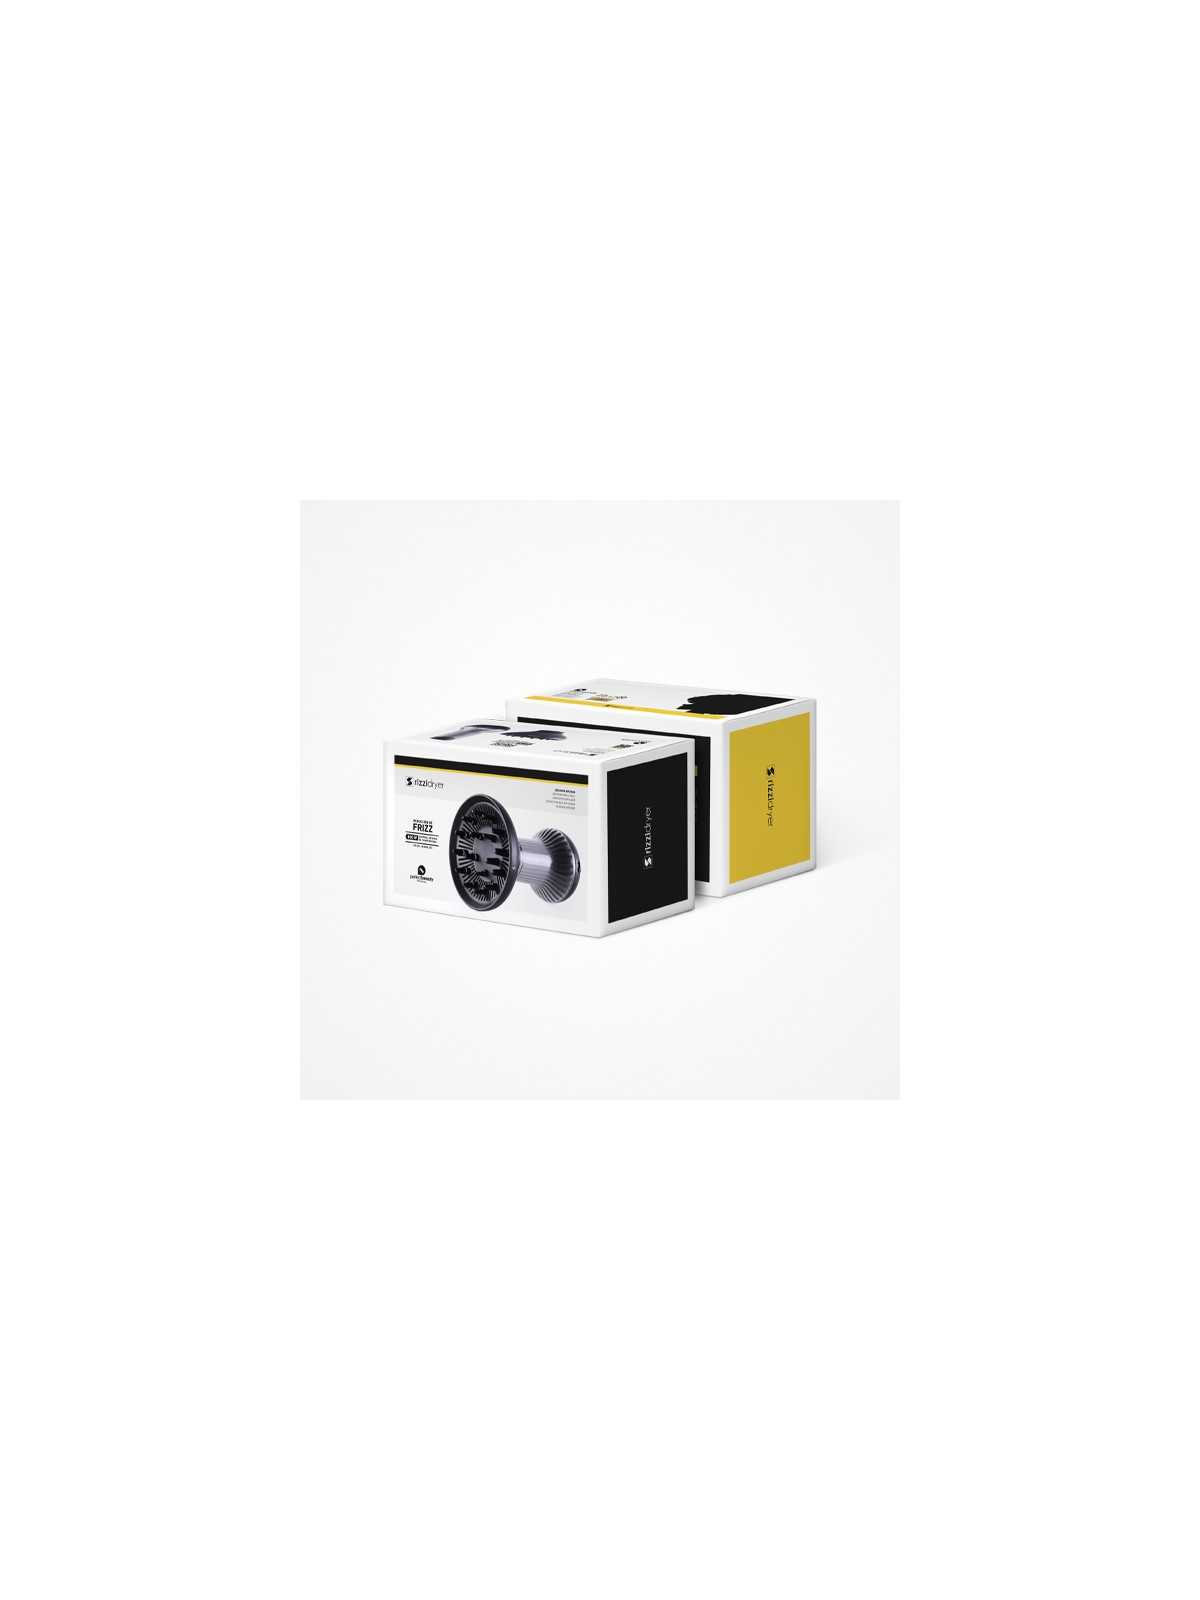 Regala Secador difusor Rizzi Dryer Perfect Beauty - Ideal para reducción de frizz con nuestra selección de Secadores por tan sólo 29,90 € o precio específico 29,90 € en Thalie Care